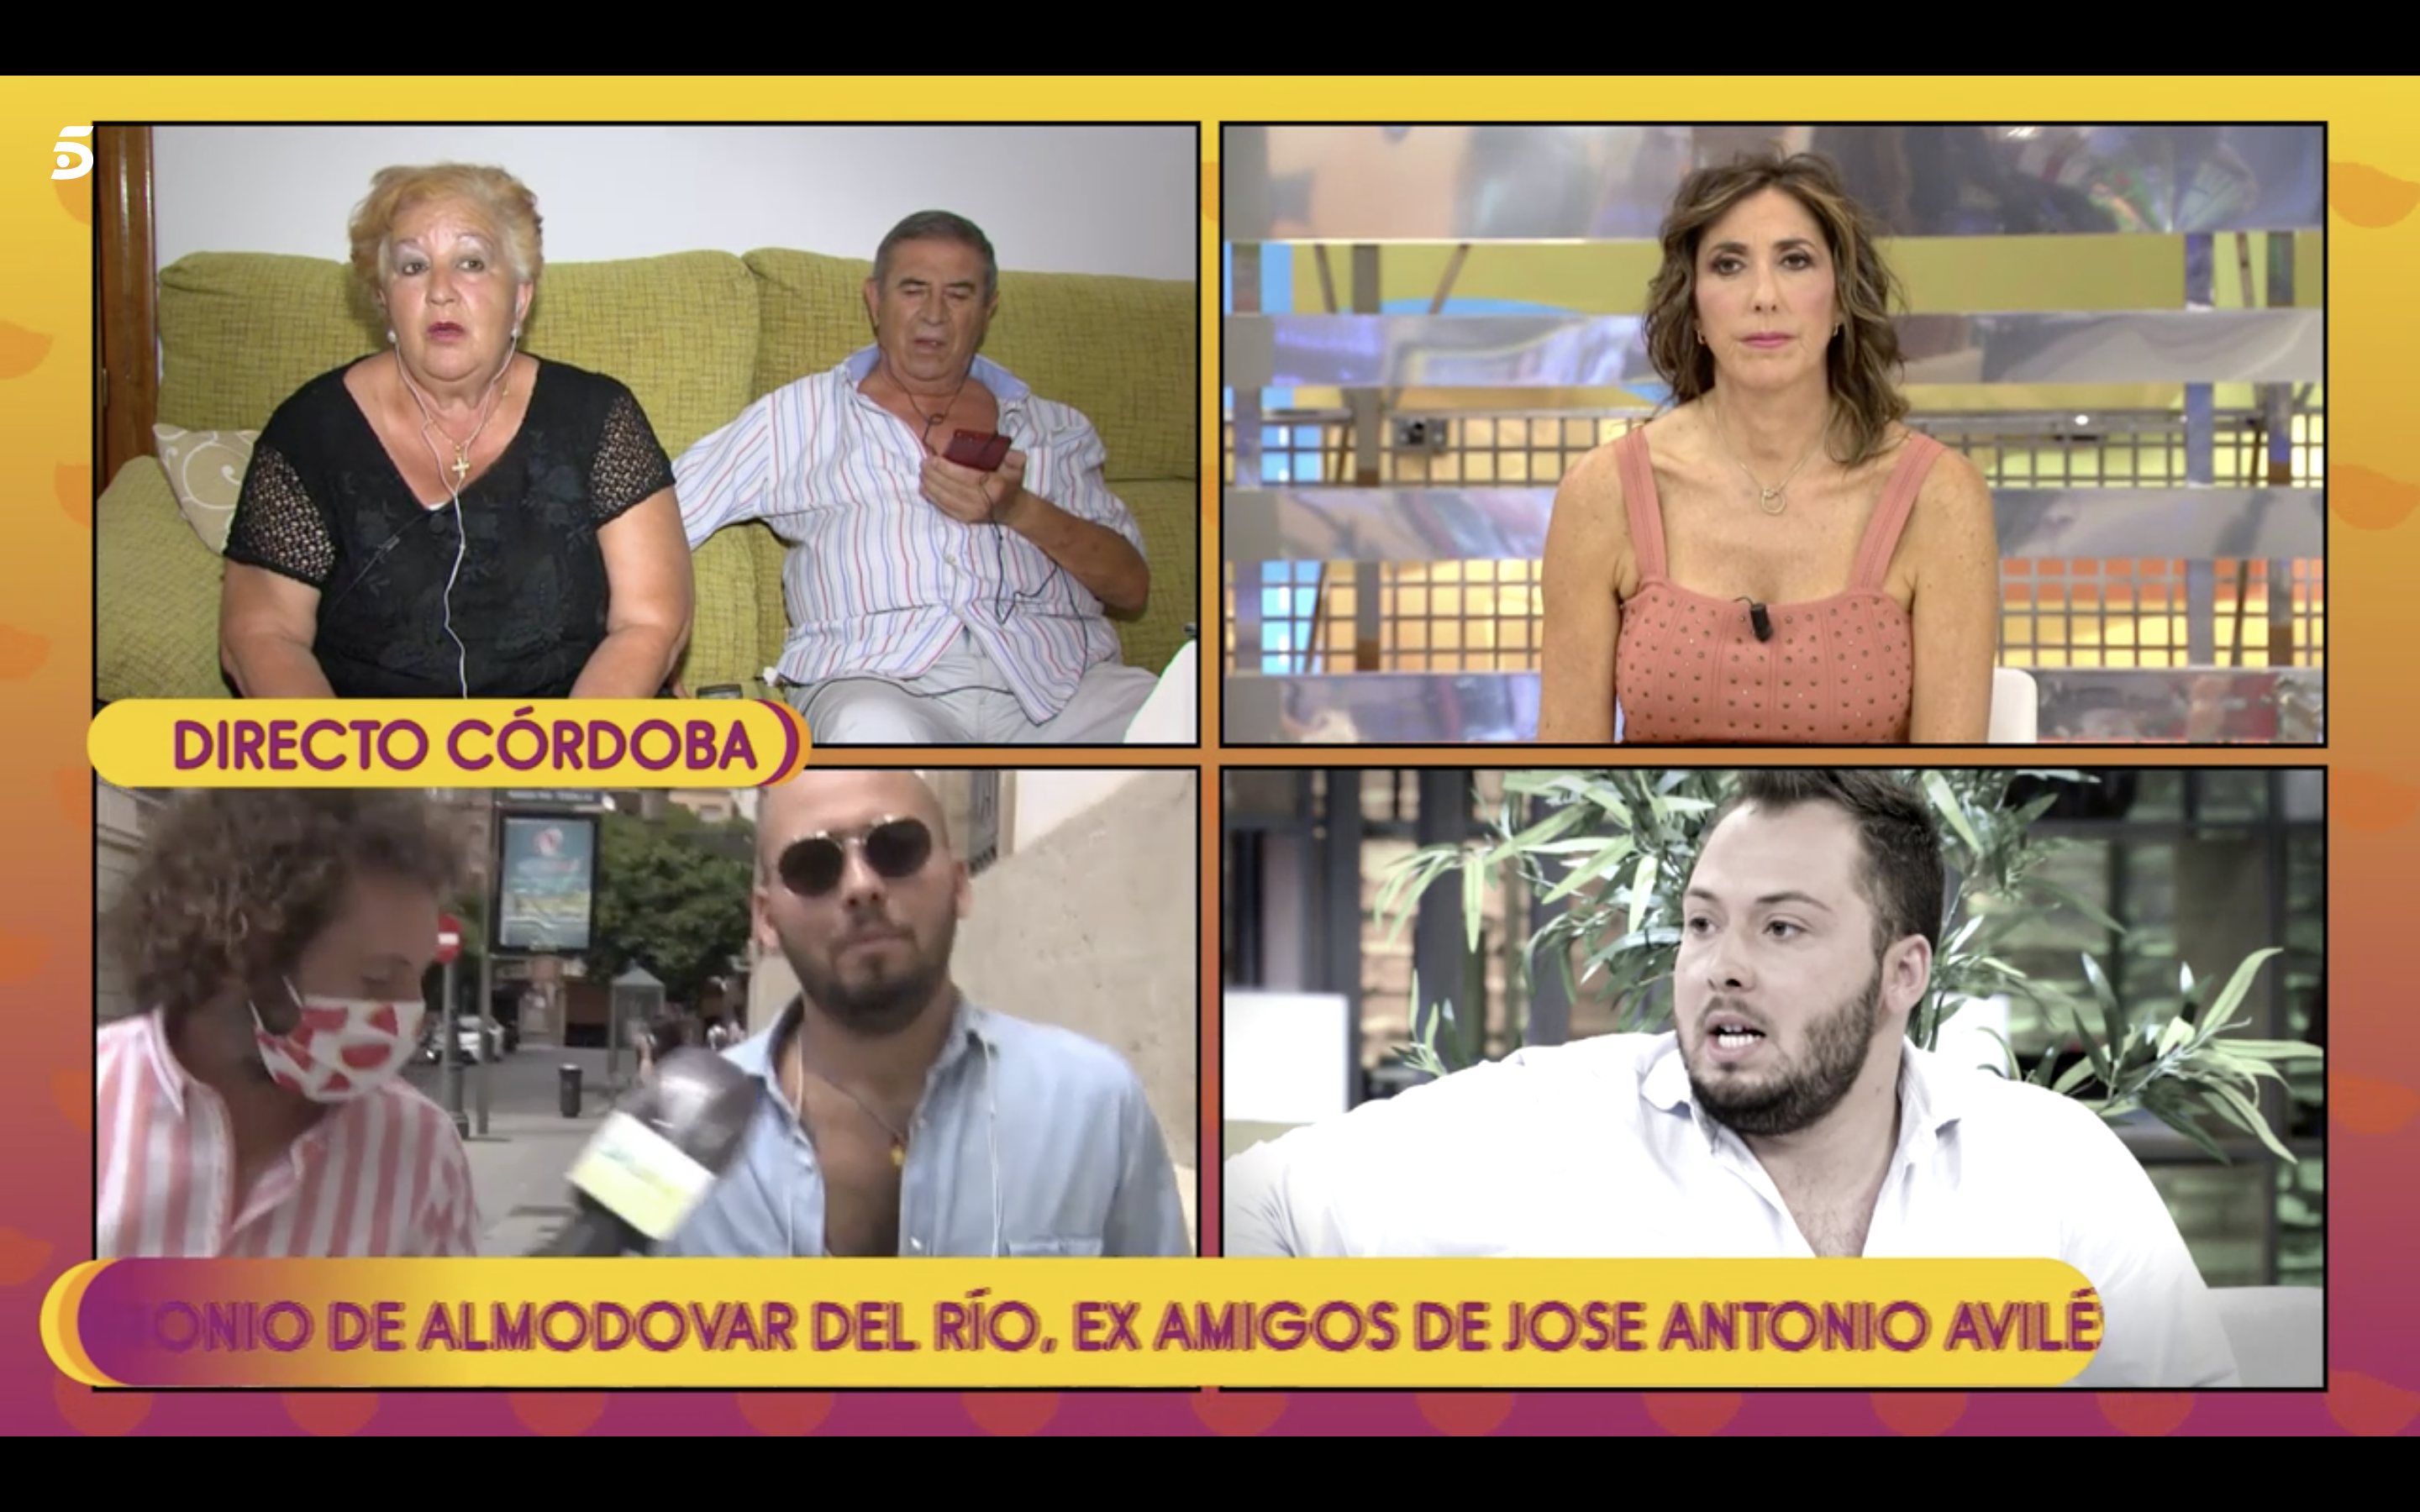 Rosi trabajó de colaboradora con Avilés en un programa de la televisión de Córdoba | Foto: Telecinco.es